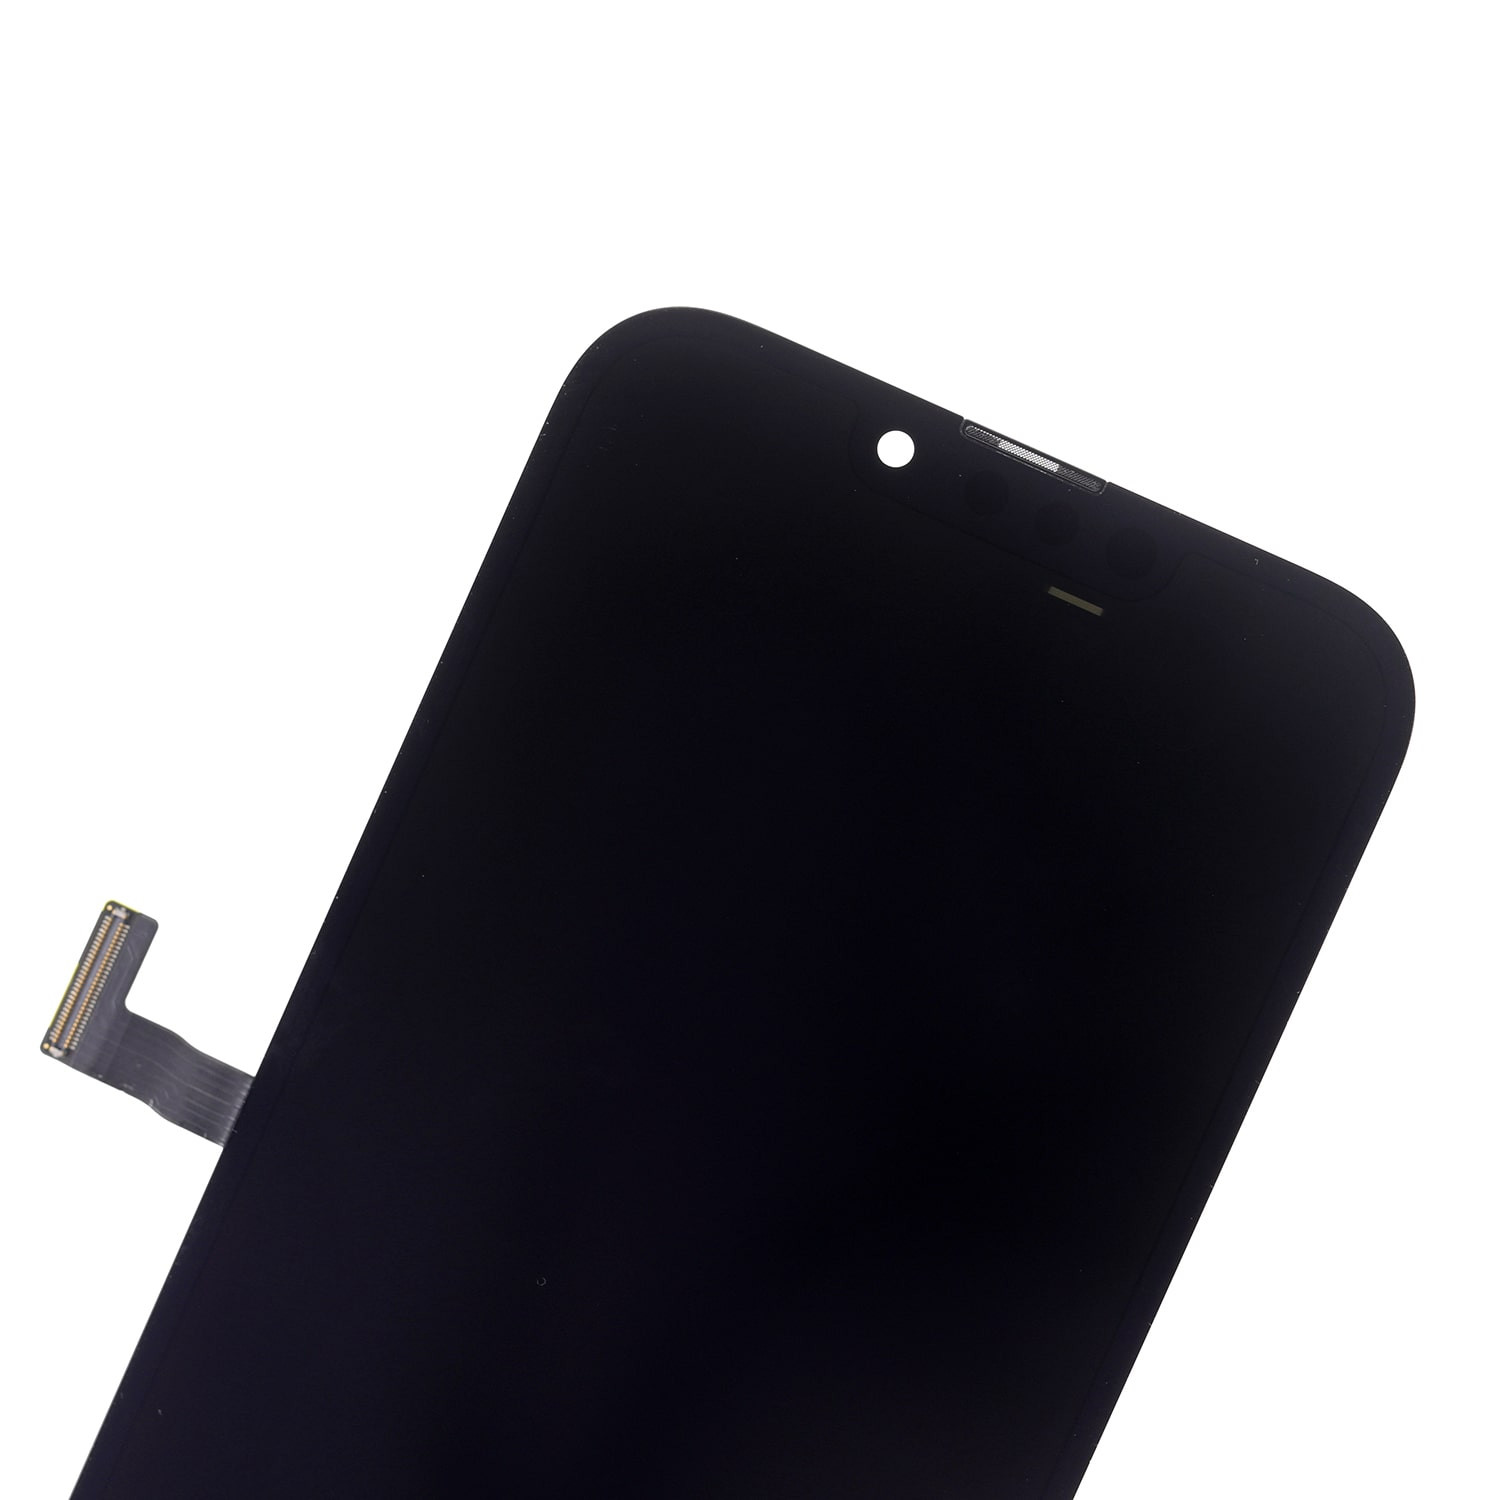 আইফোন 13 প্রো এর জন্য OLED অ্যাসেম্বলি স্ক্রিন প্রতিস্থাপন - 3